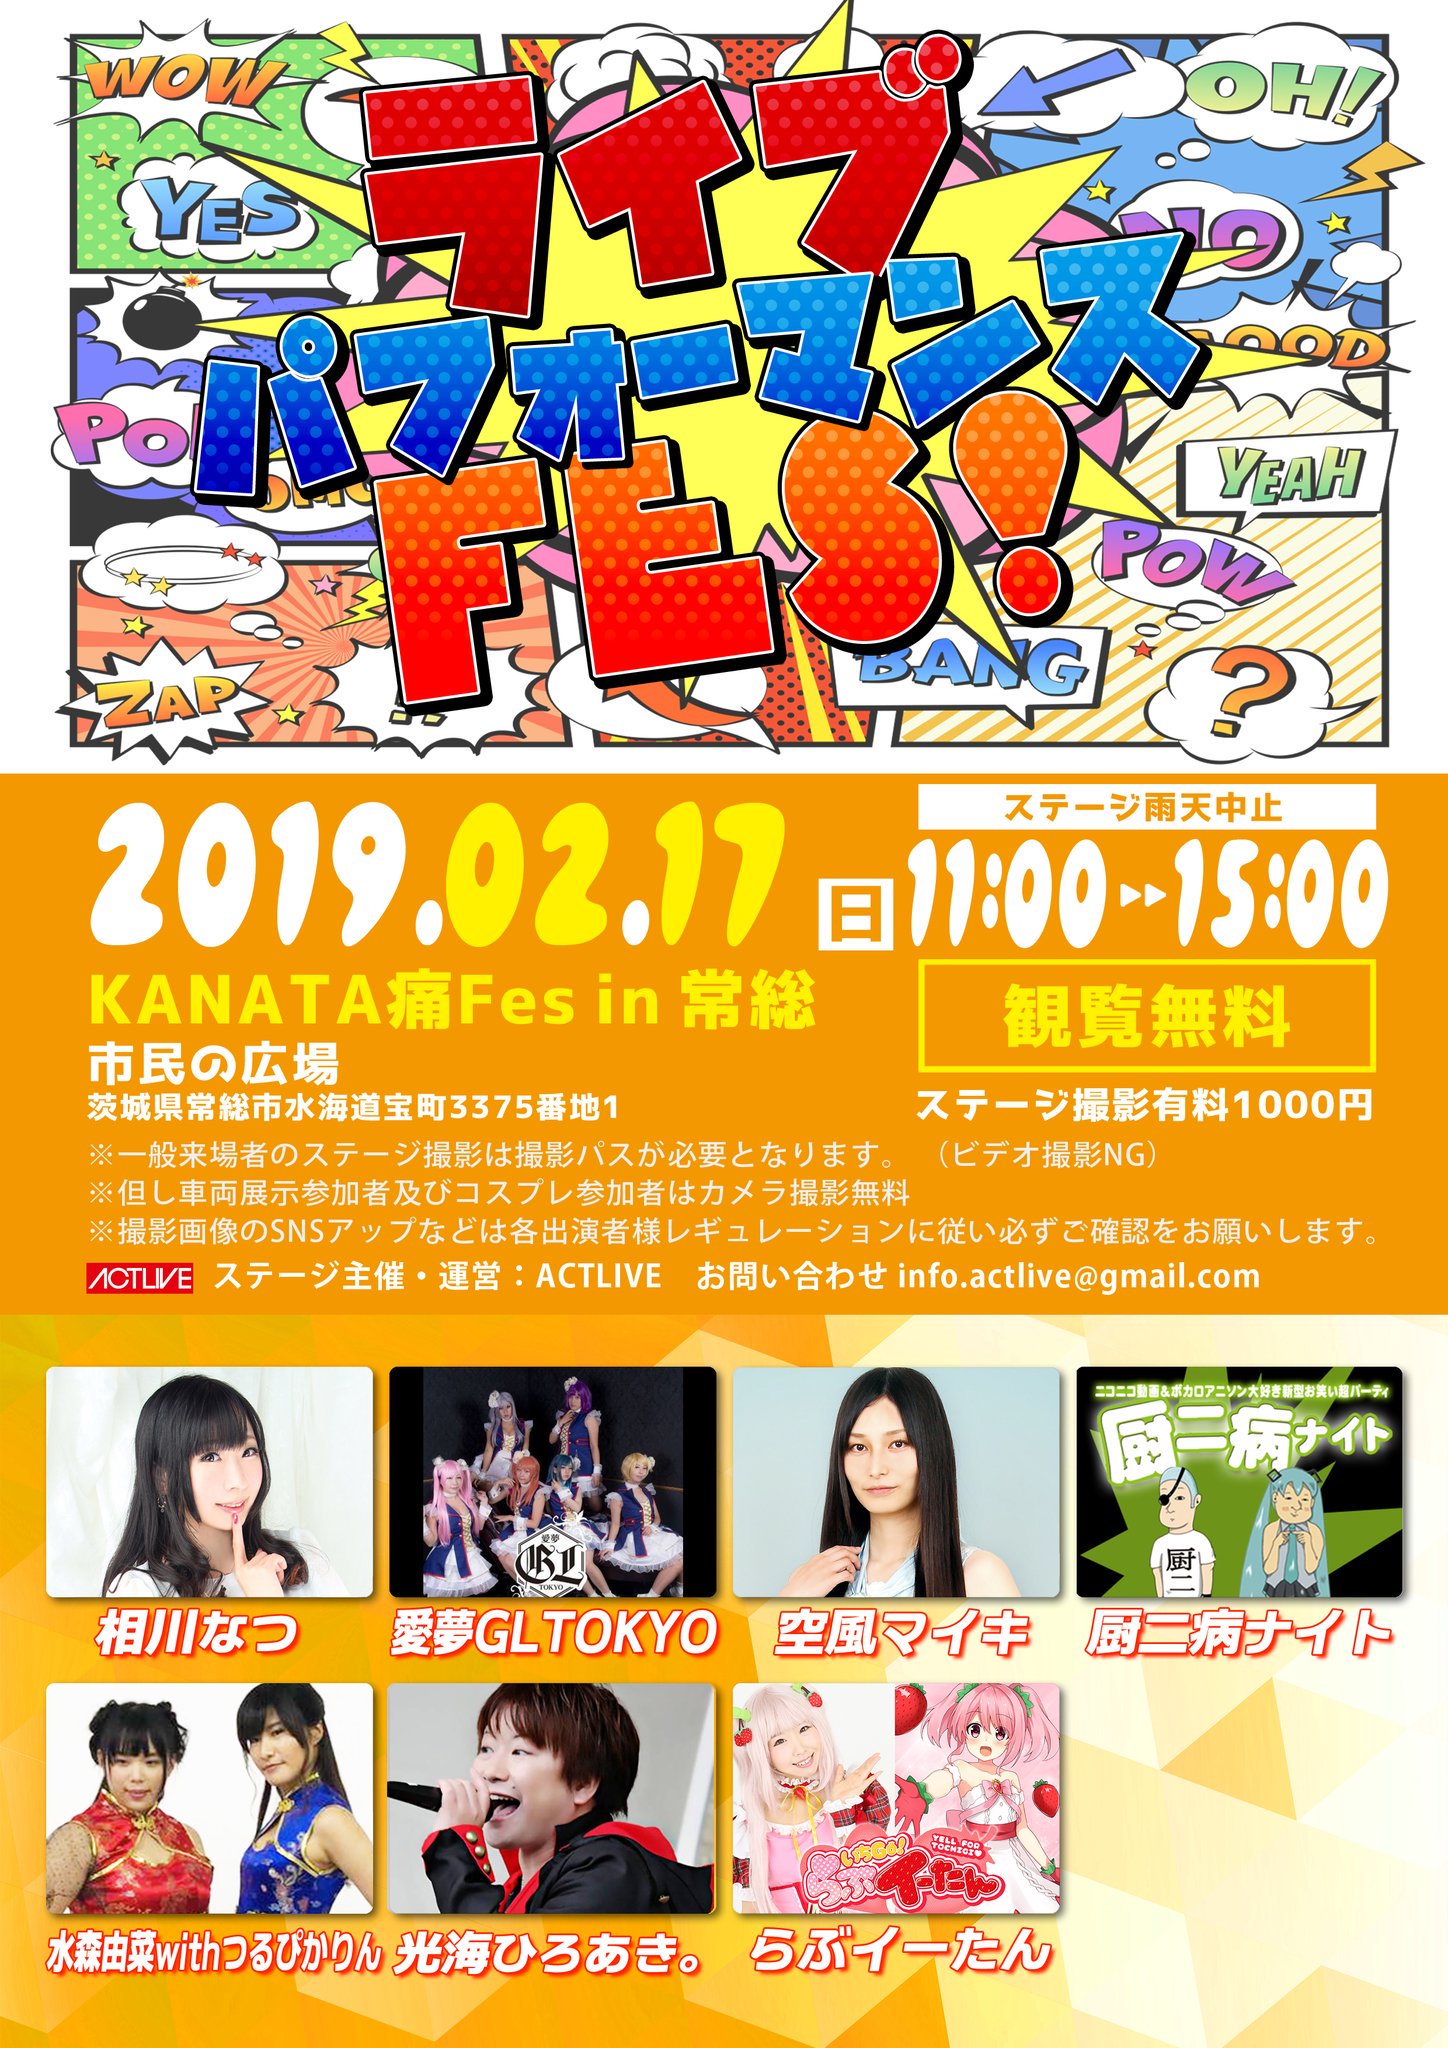 2月17日(日) KANATA痛フェスin常総の『ライブパフォーマンスFES!』に出演します!!!